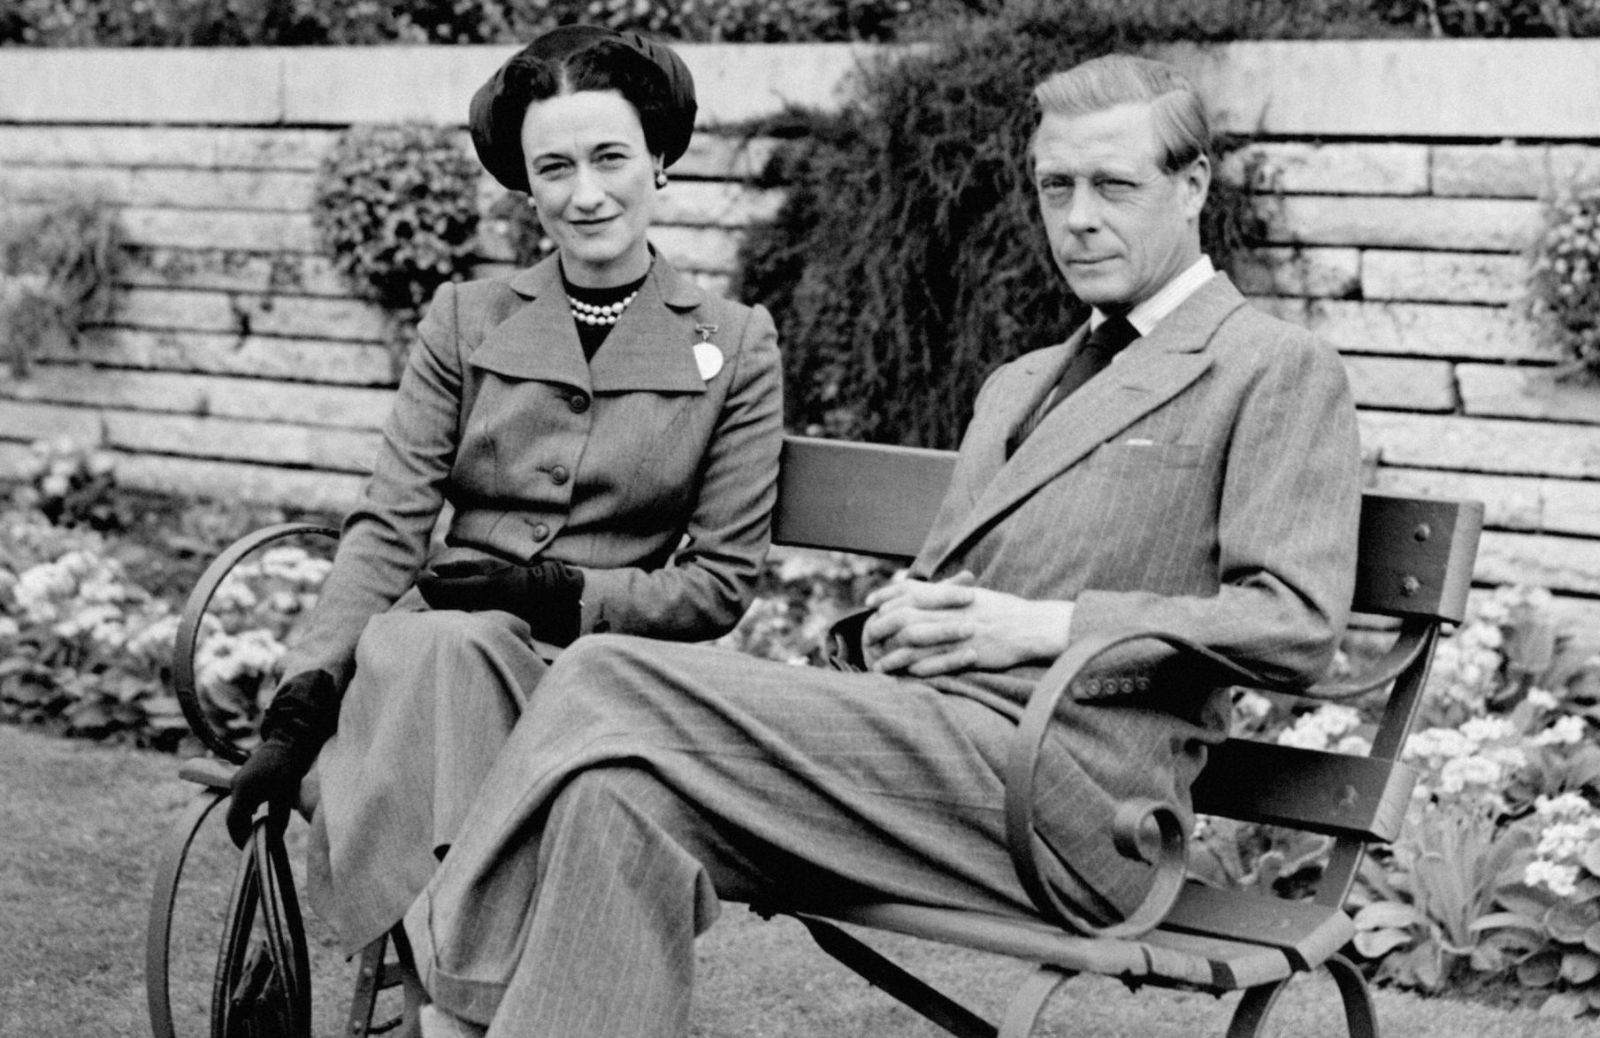 Scandalo a corte, l’amore proibito tra Wallis Simpson e il duca di Windsor